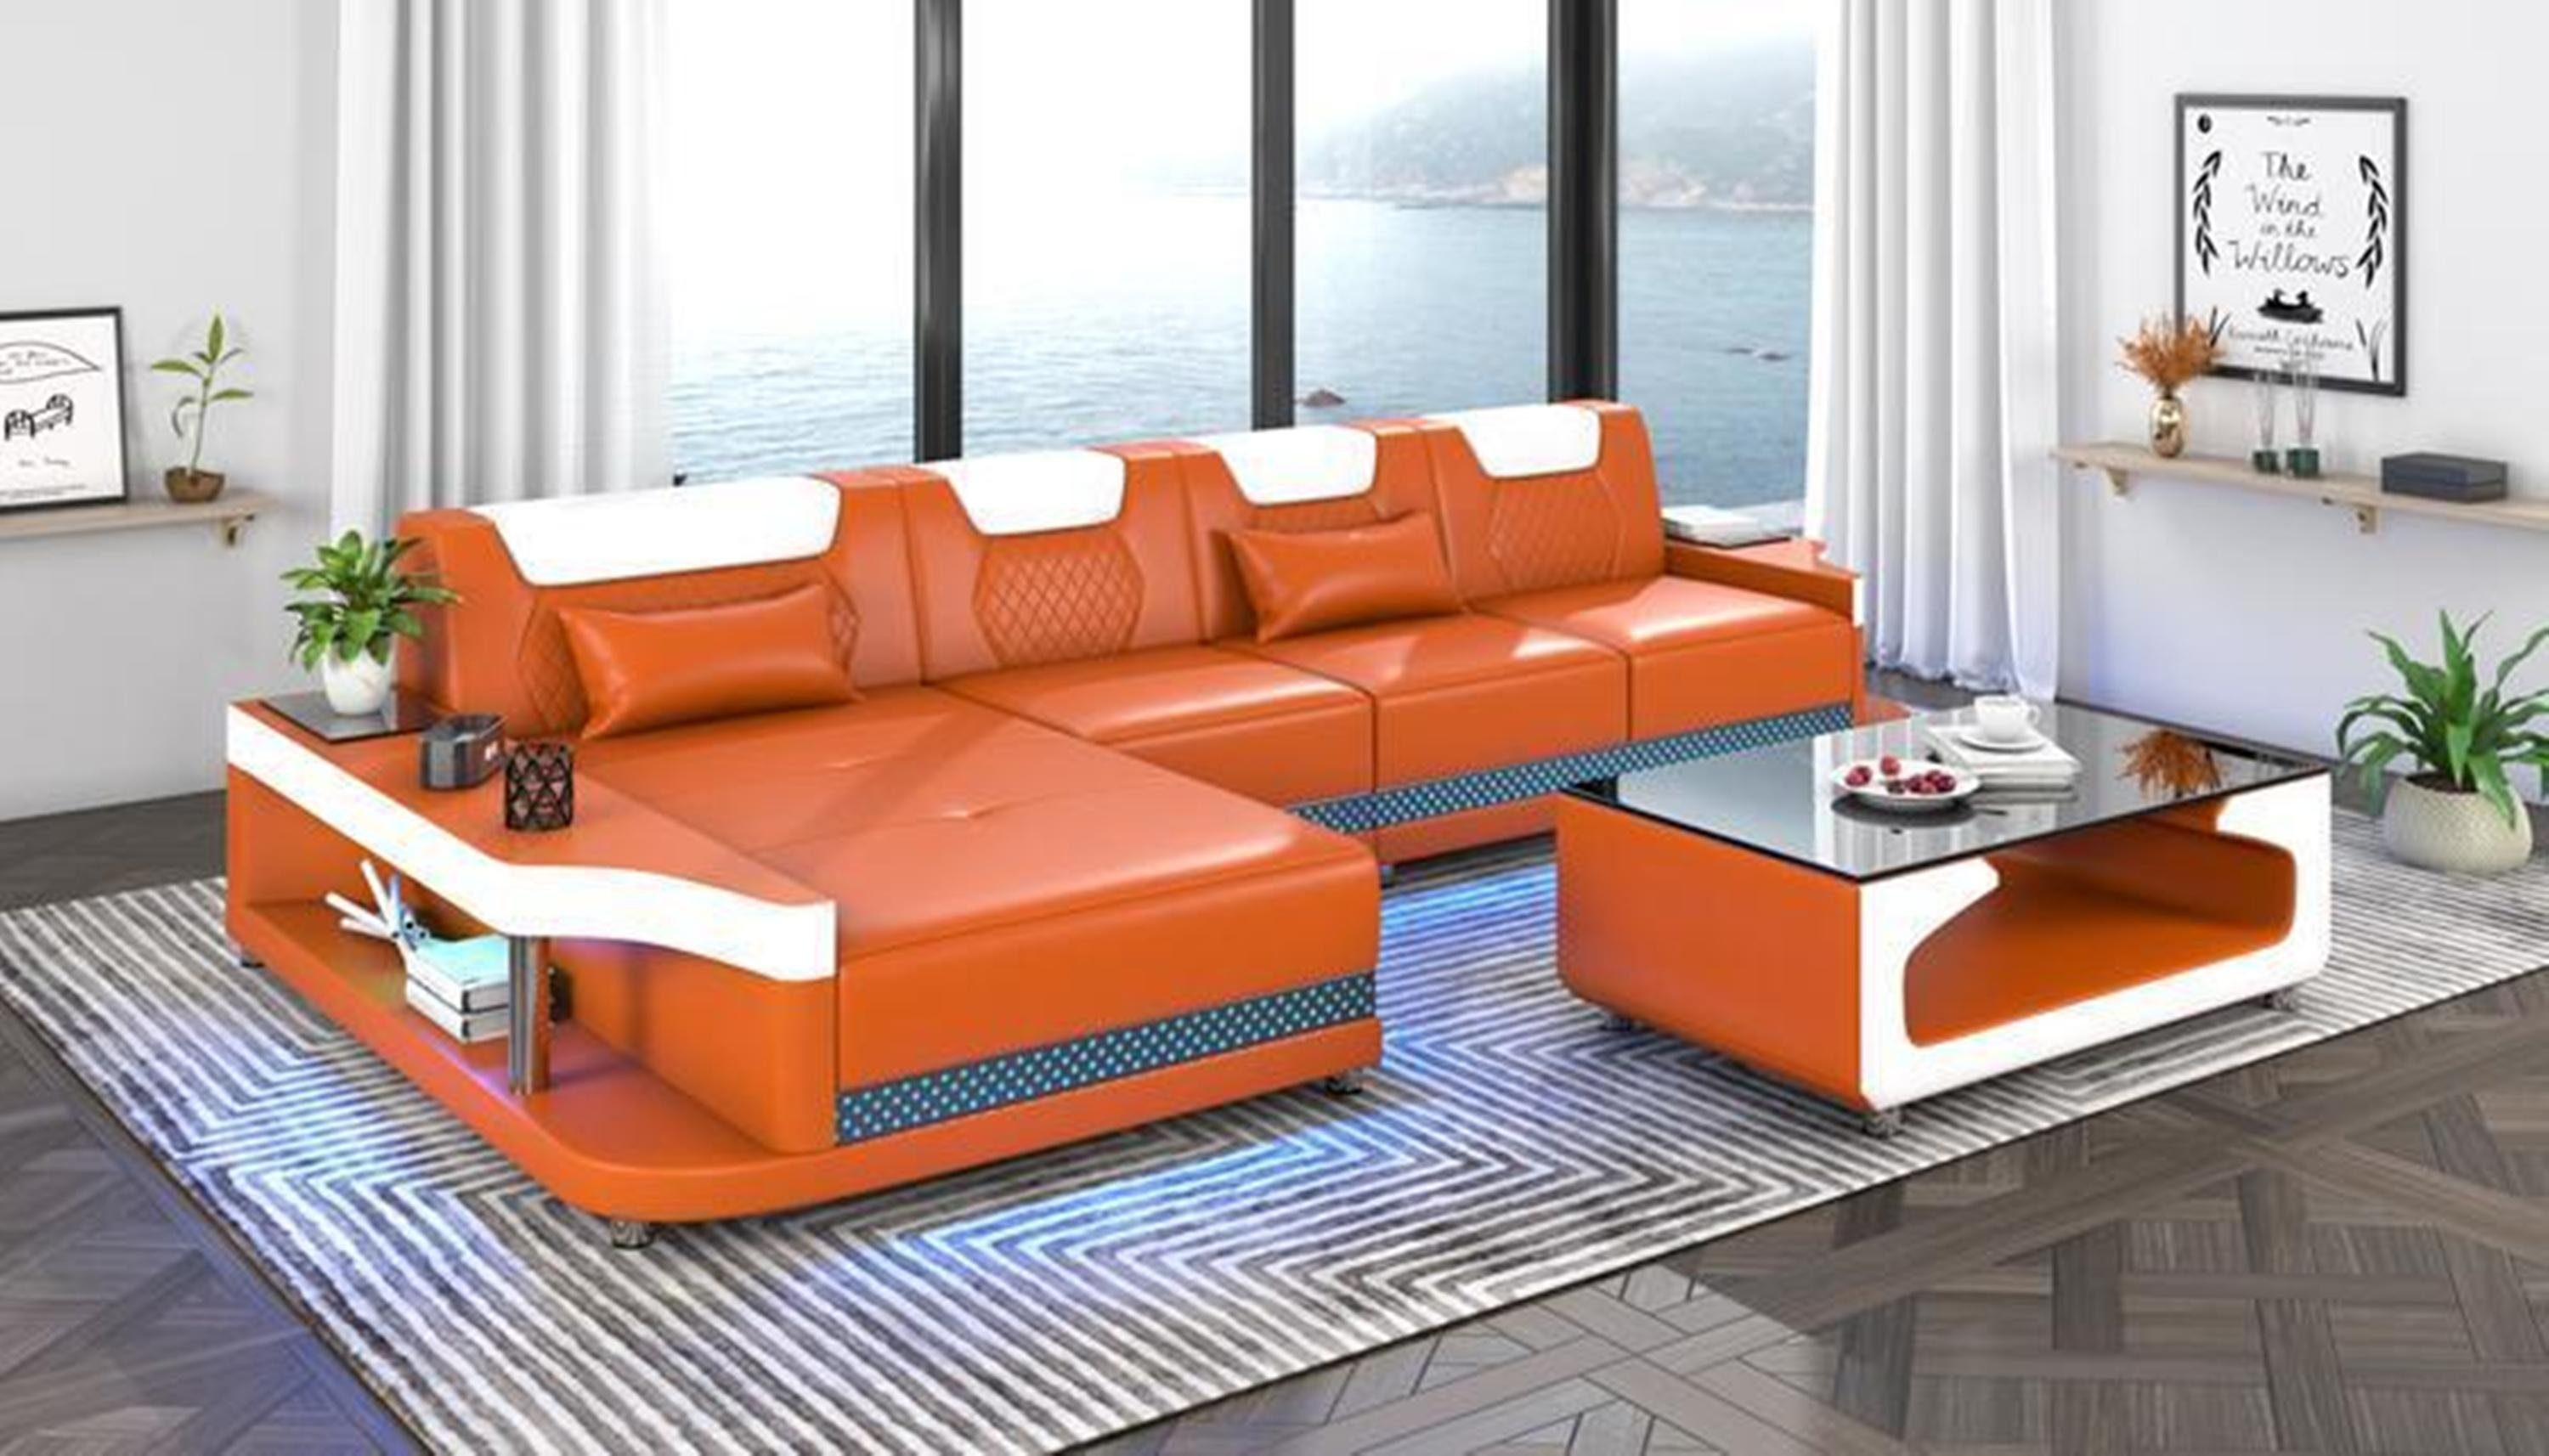 JVmoebel Ecksofa, Design Eckcouch Ecksofa Wohnzimmer Möbel Sofa L Form + Couchtisch Orange